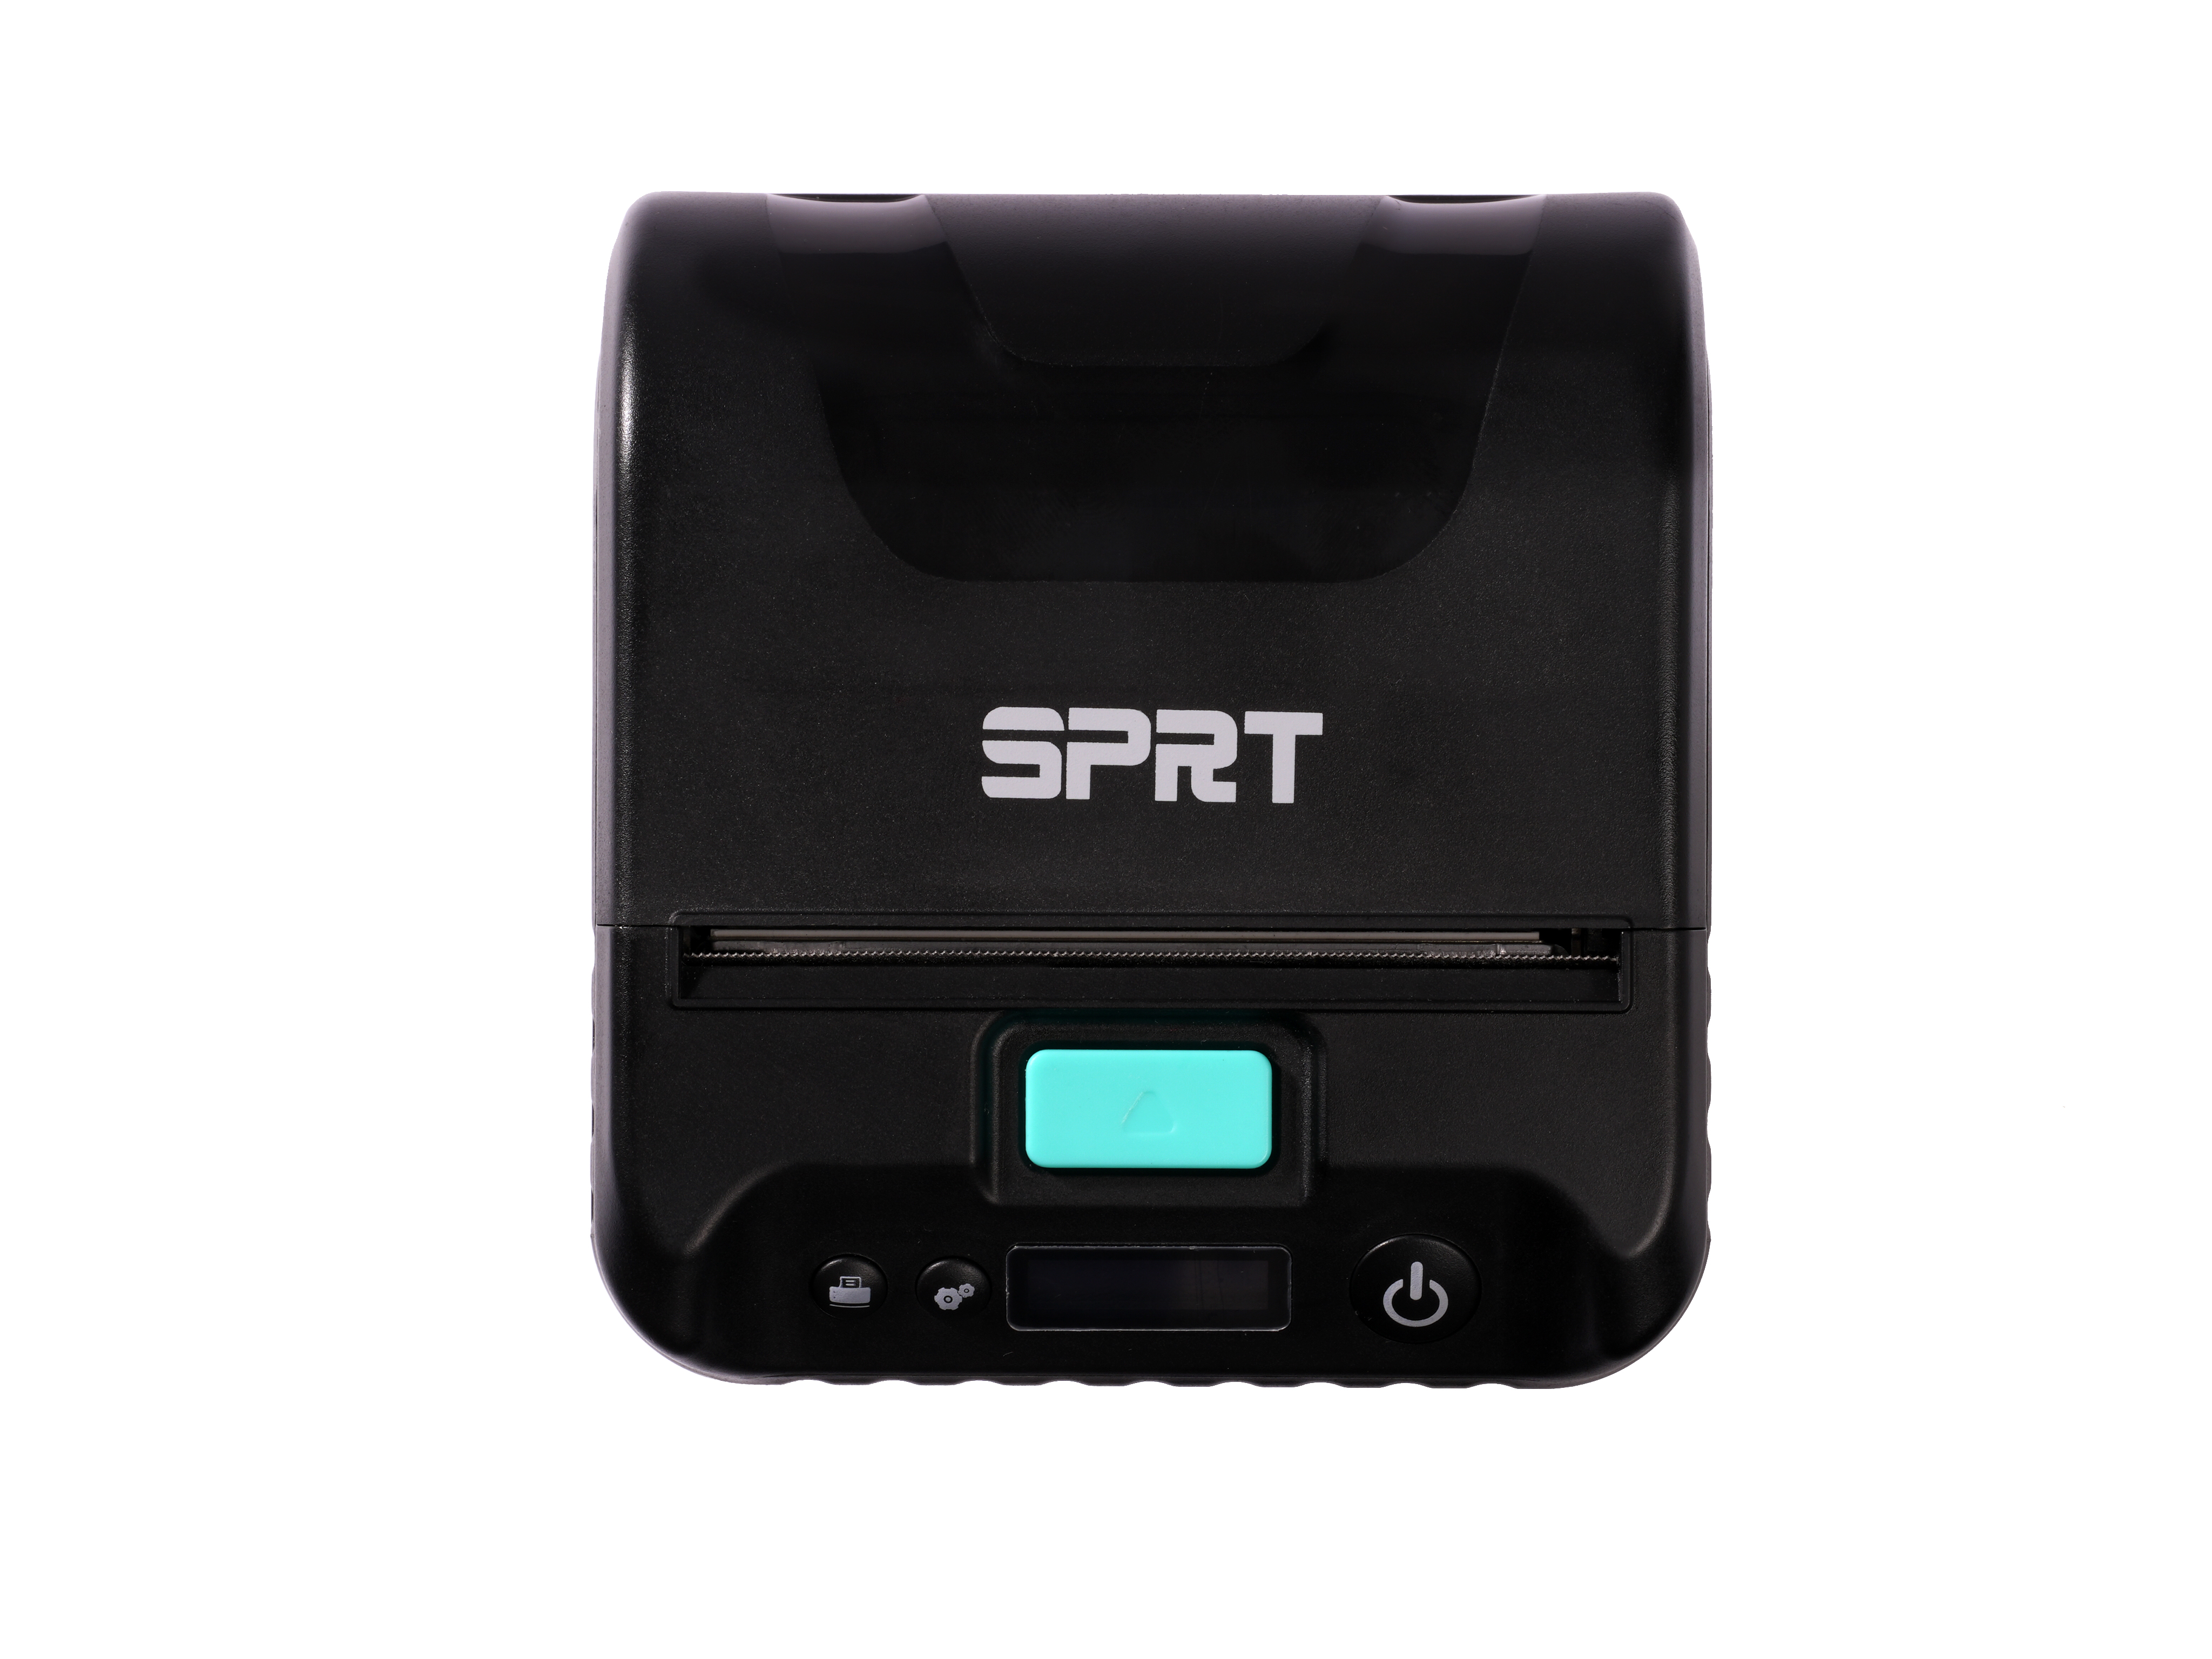 Imprimantă portabilă de etichete de 80 mm SP-L39 cu Bluetooth